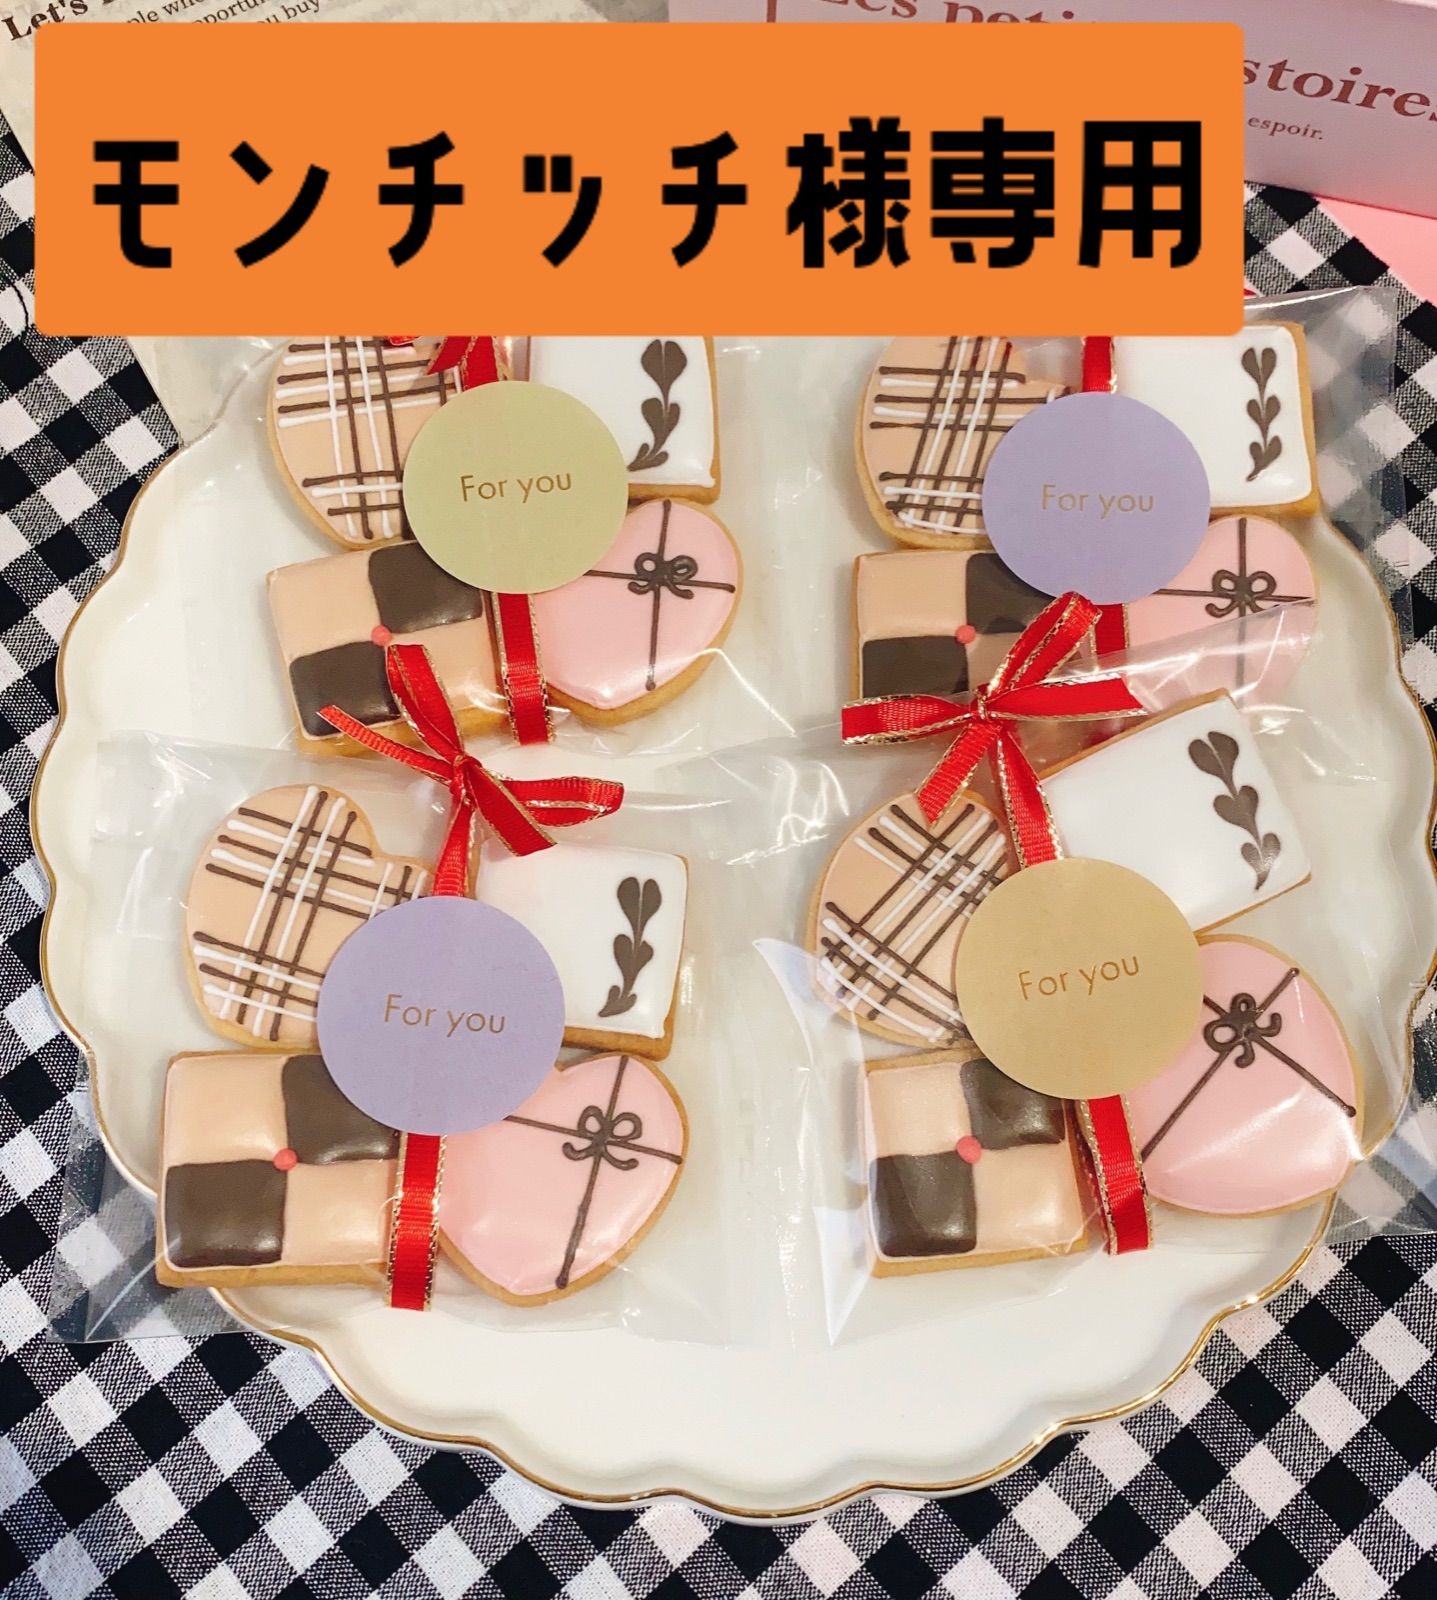 モンチッチ様専用おまとめセット - アイシングクッキー専門店sonmuru